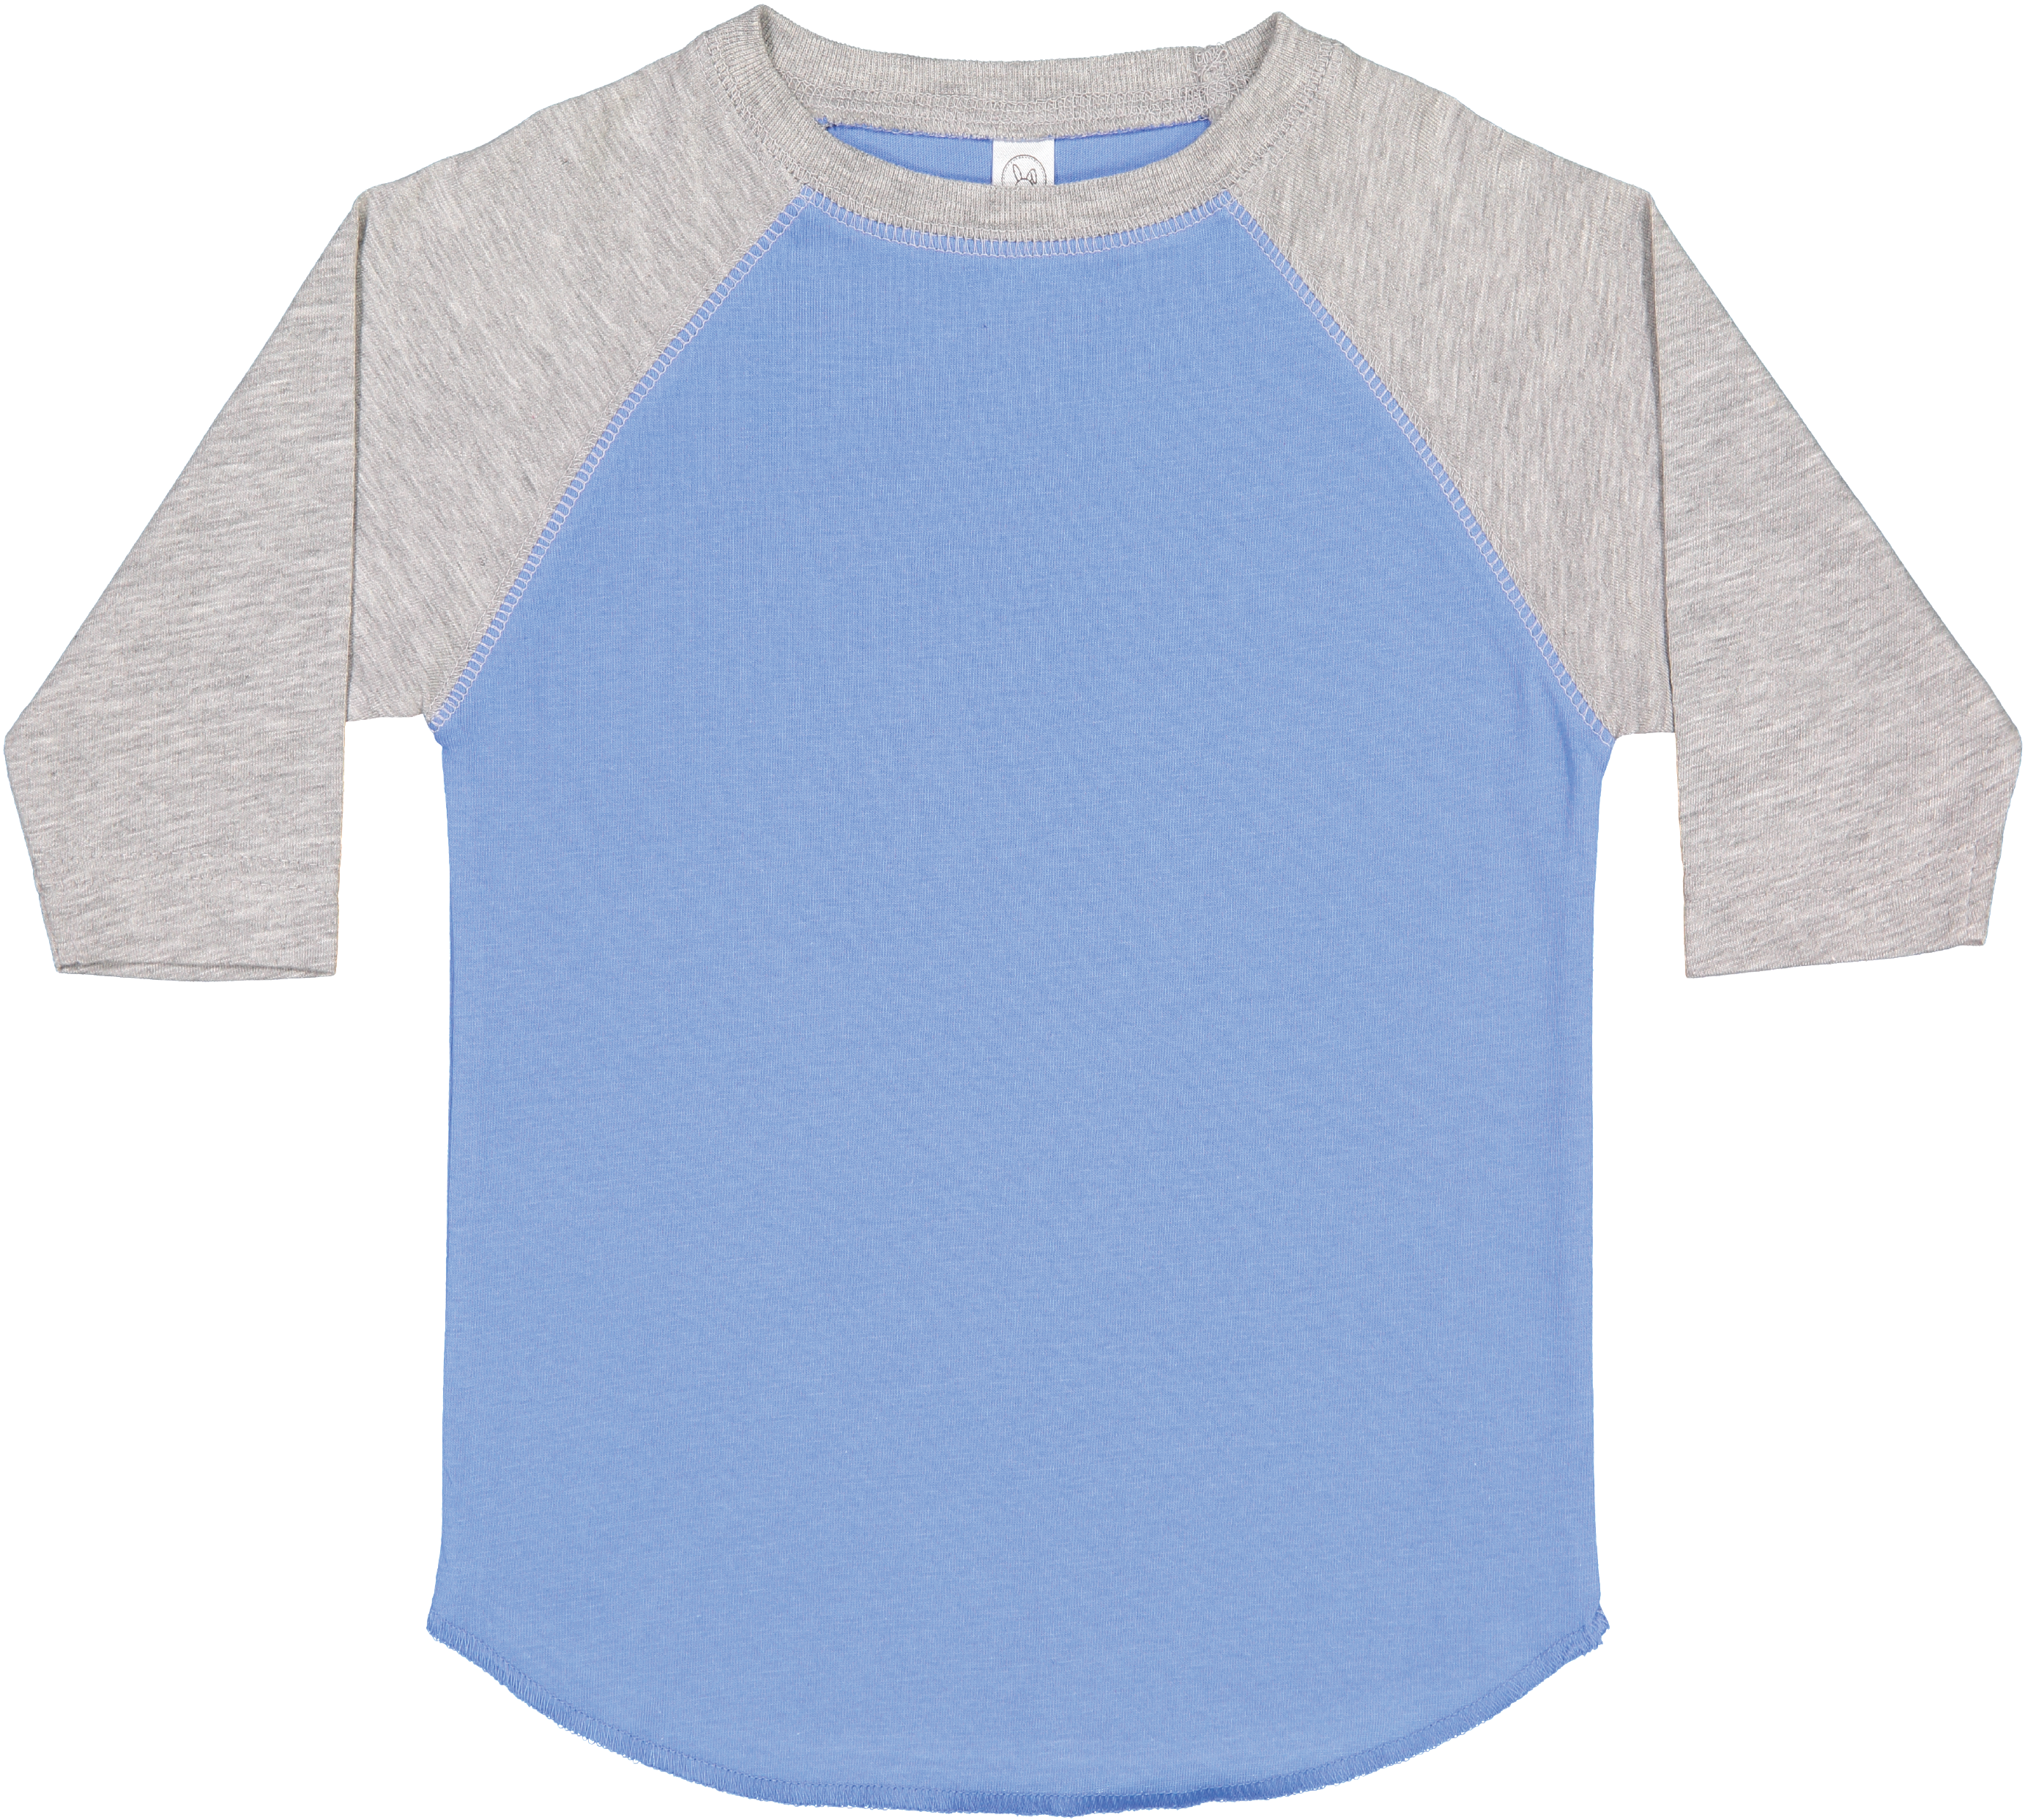 Toddler (Unisex) Raglan Baseball T-Shirt  (Carolina Blue & Vintage Heather)